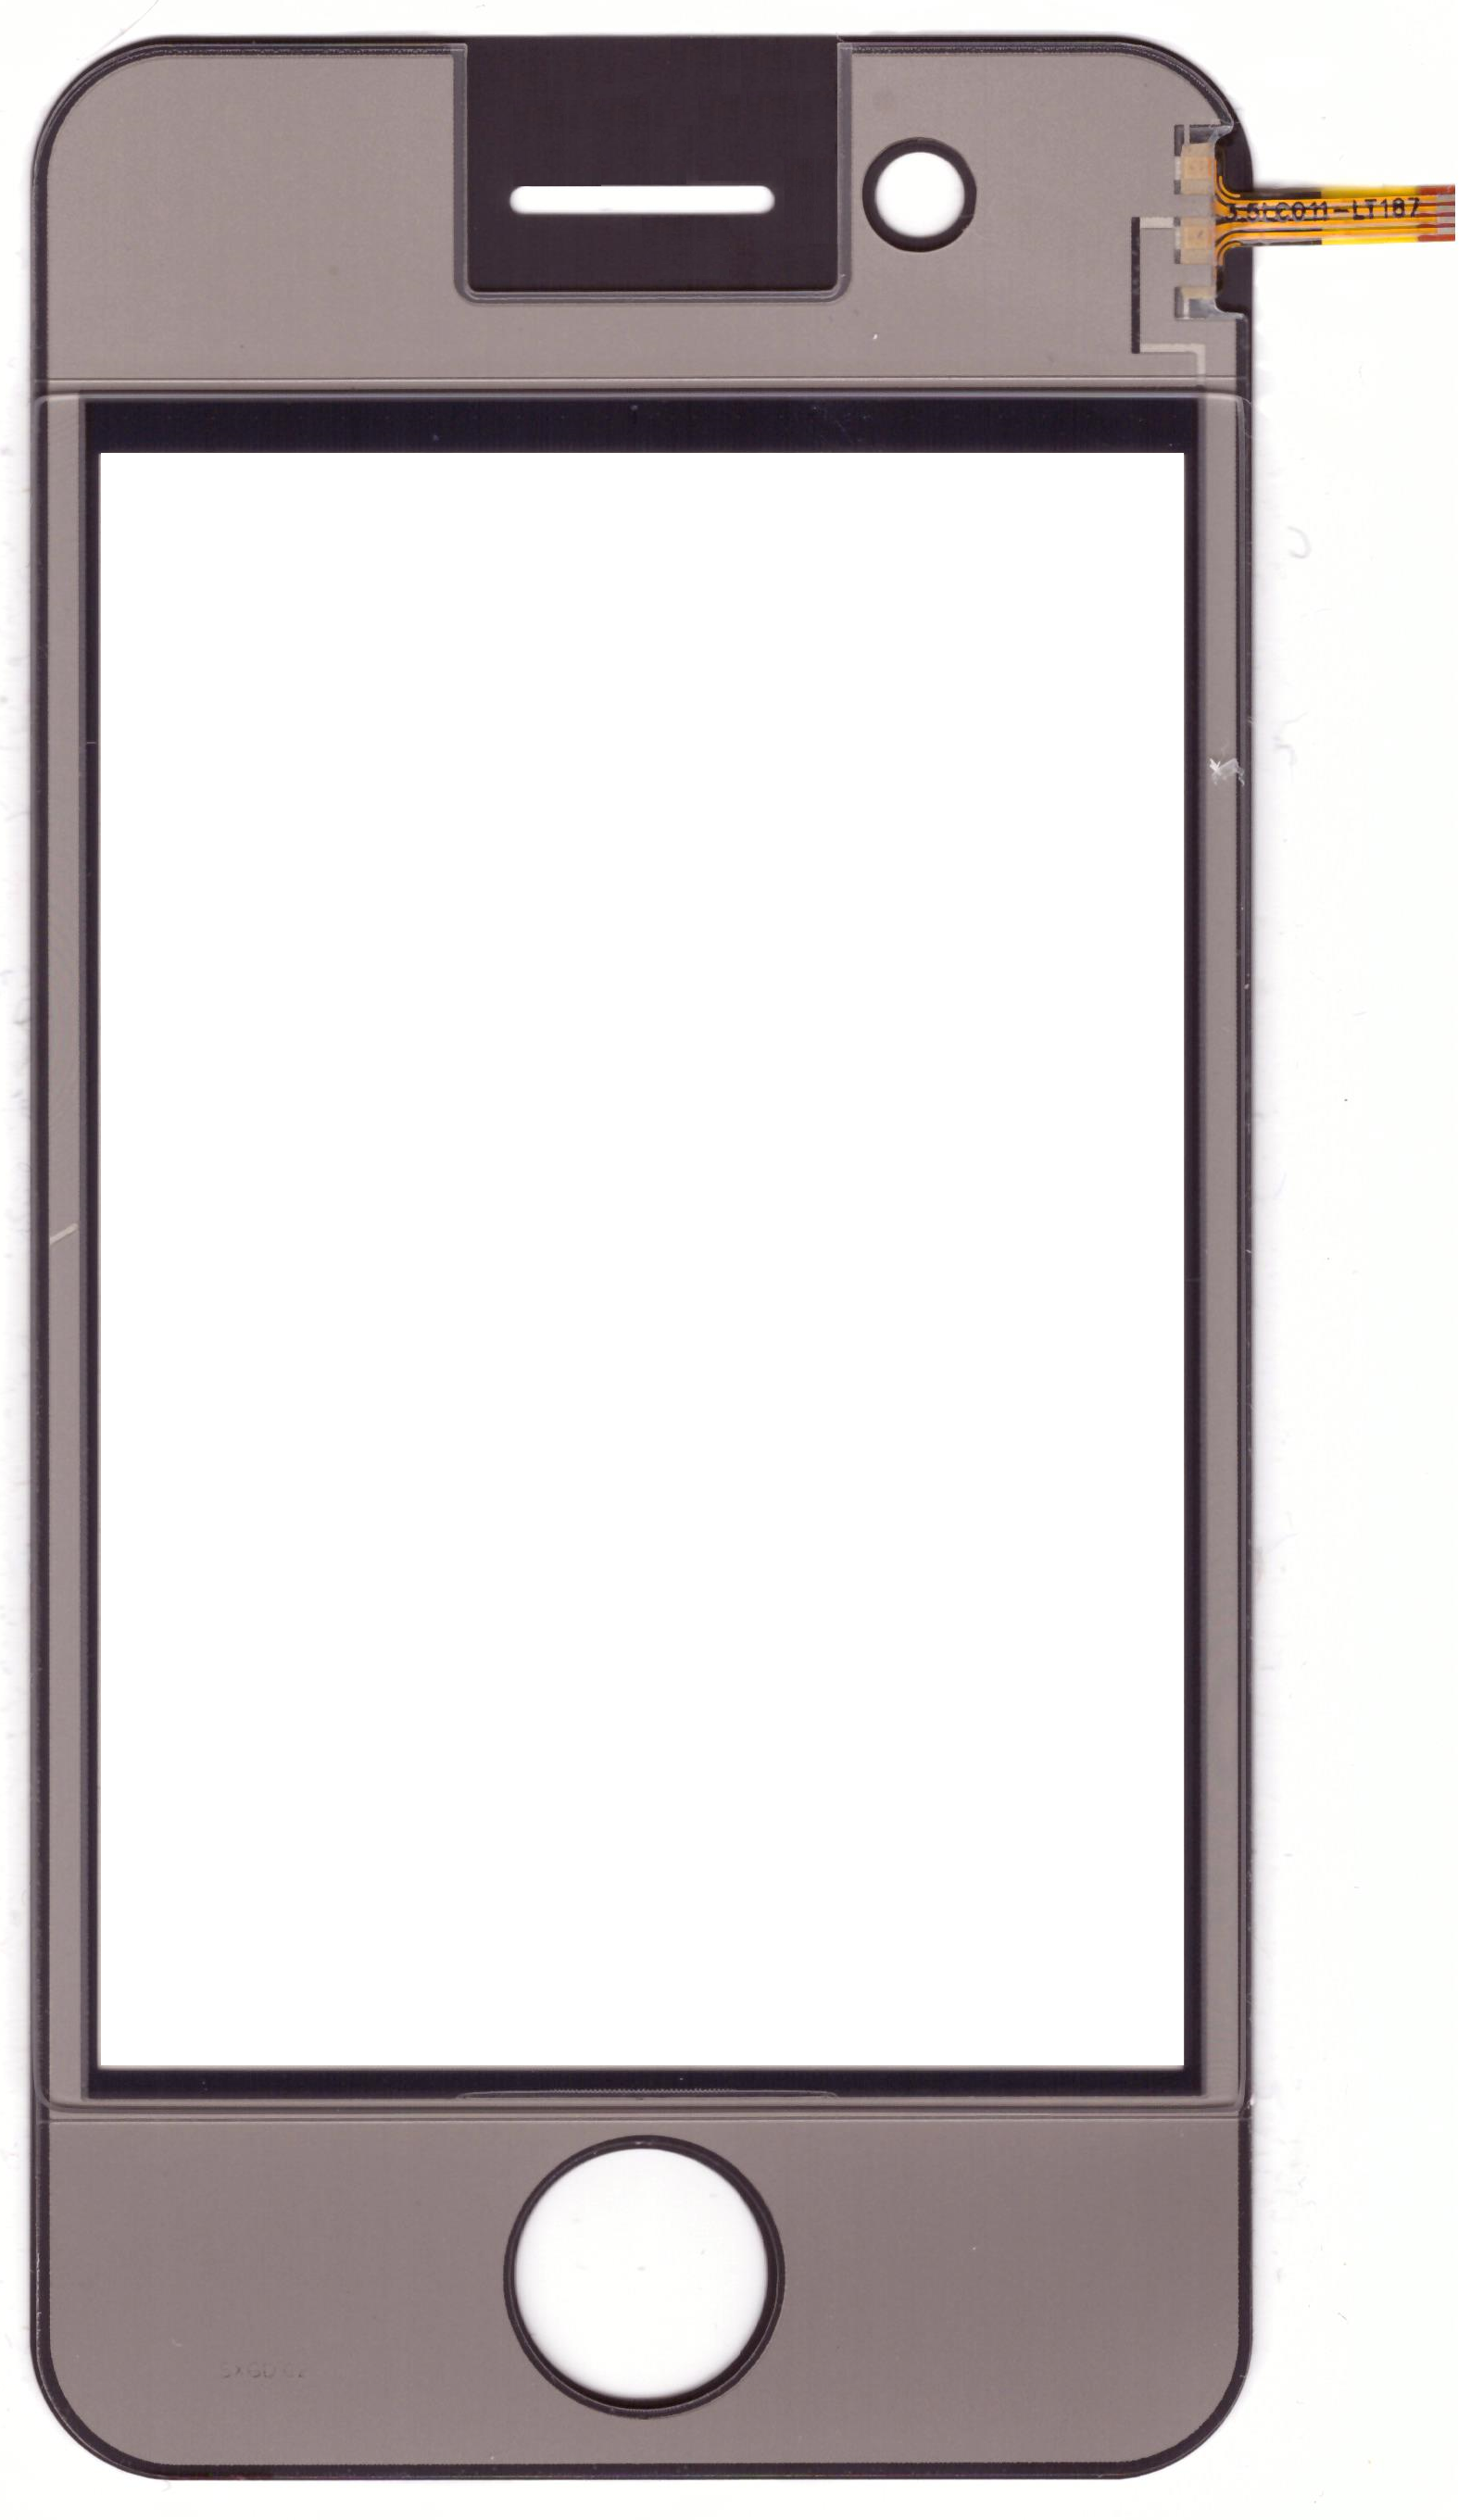 Тачскрин для китайского телефона iPhone 4Gs Размер 11155*56 P/N 35LC011-LT187 Под коннектор